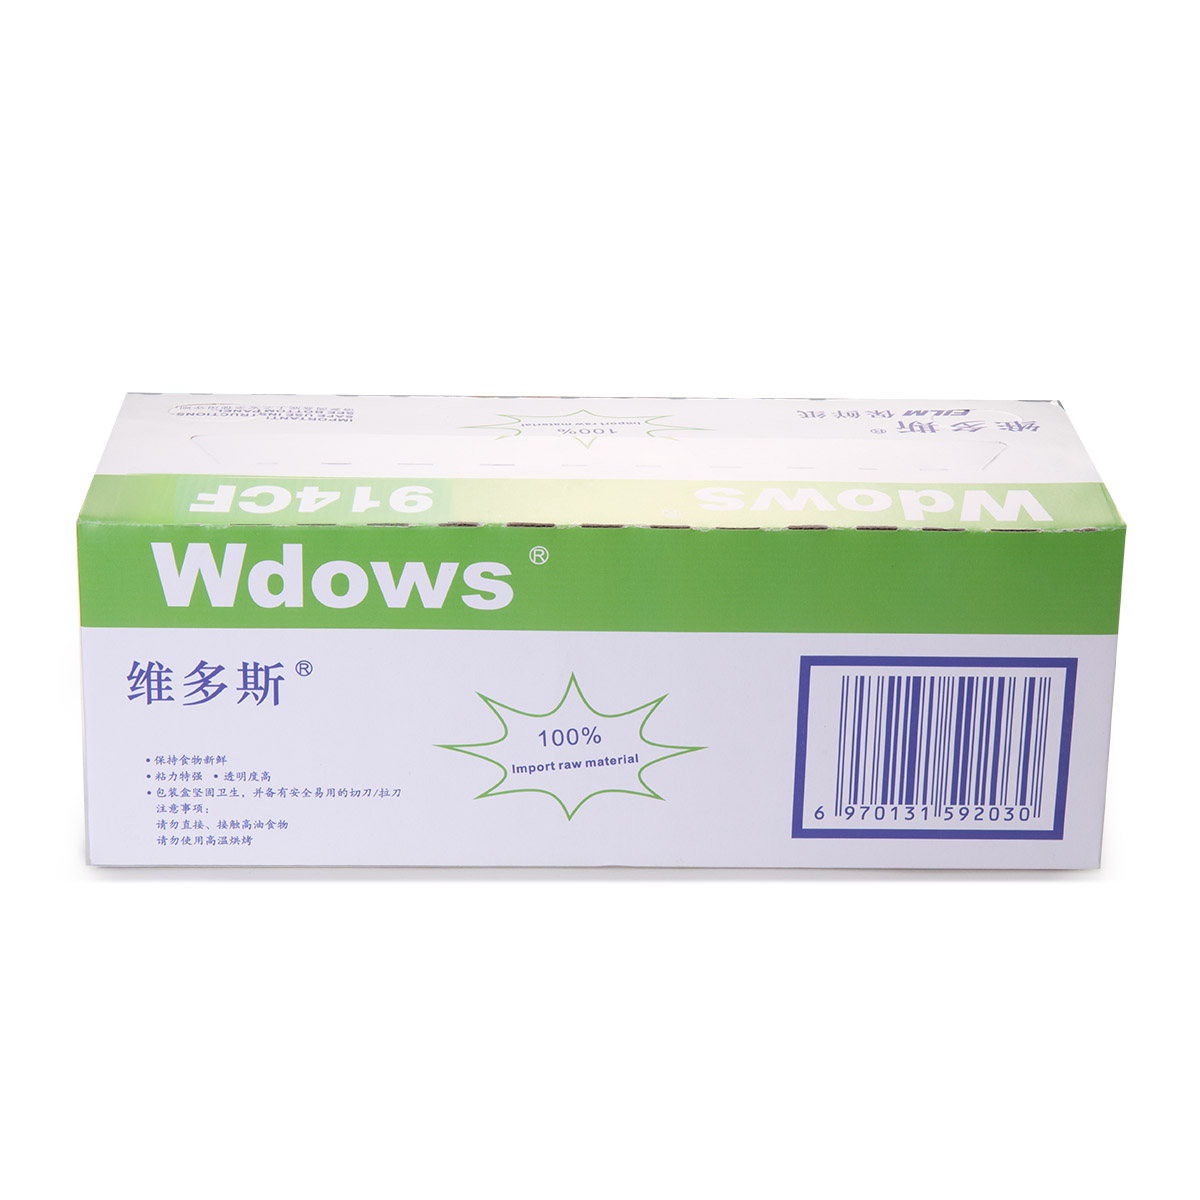 维多斯保鲜膜914/ 45cm*500m/维多斯WDOWS保鲜膜价格